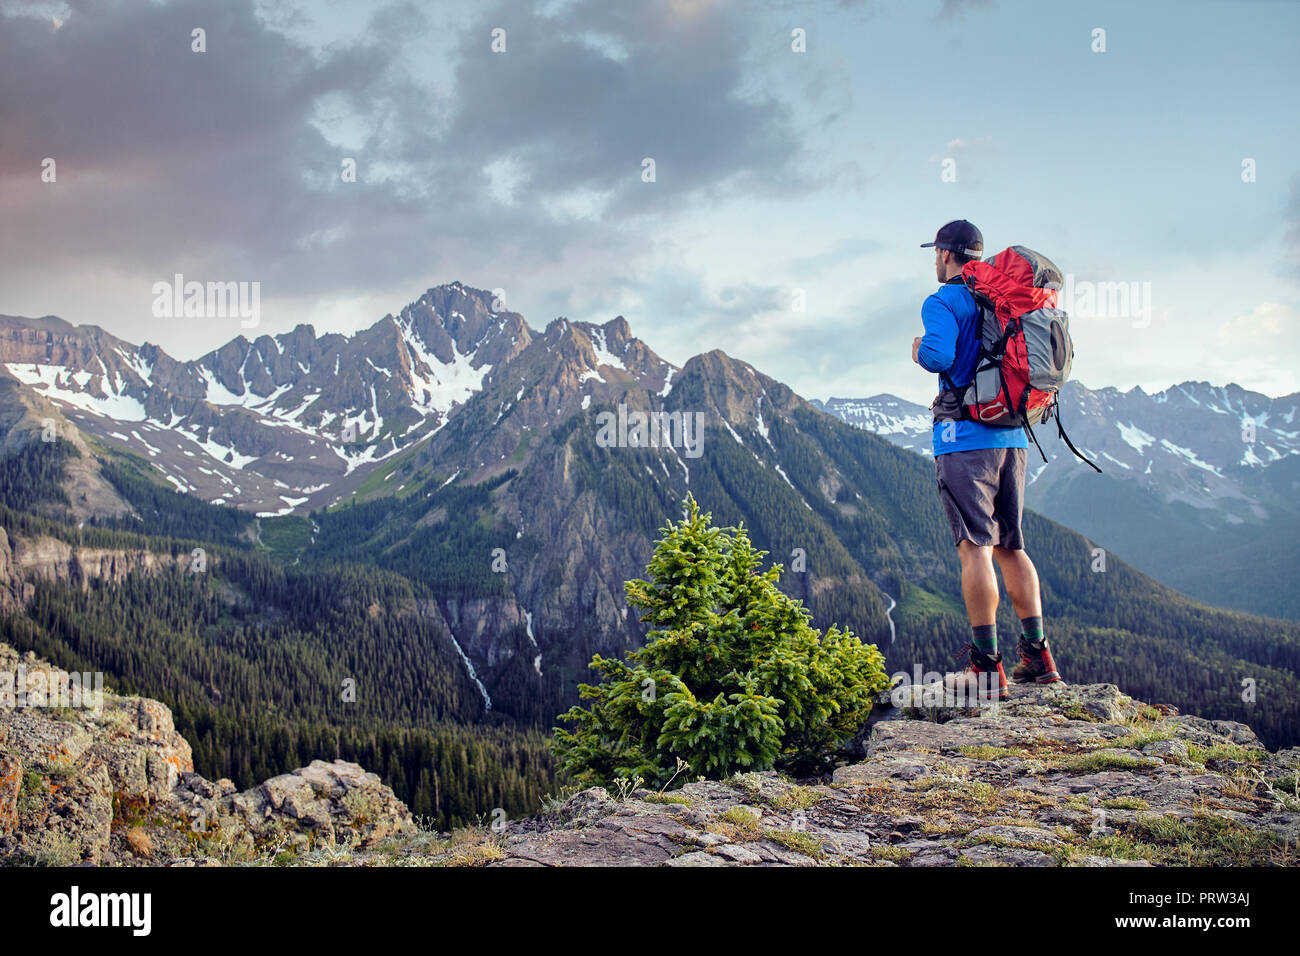 Escursionista sul picco di montagna, Mount Sneffels, Ouray, Colorado, STATI UNITI D'AMERICA Foto Stock